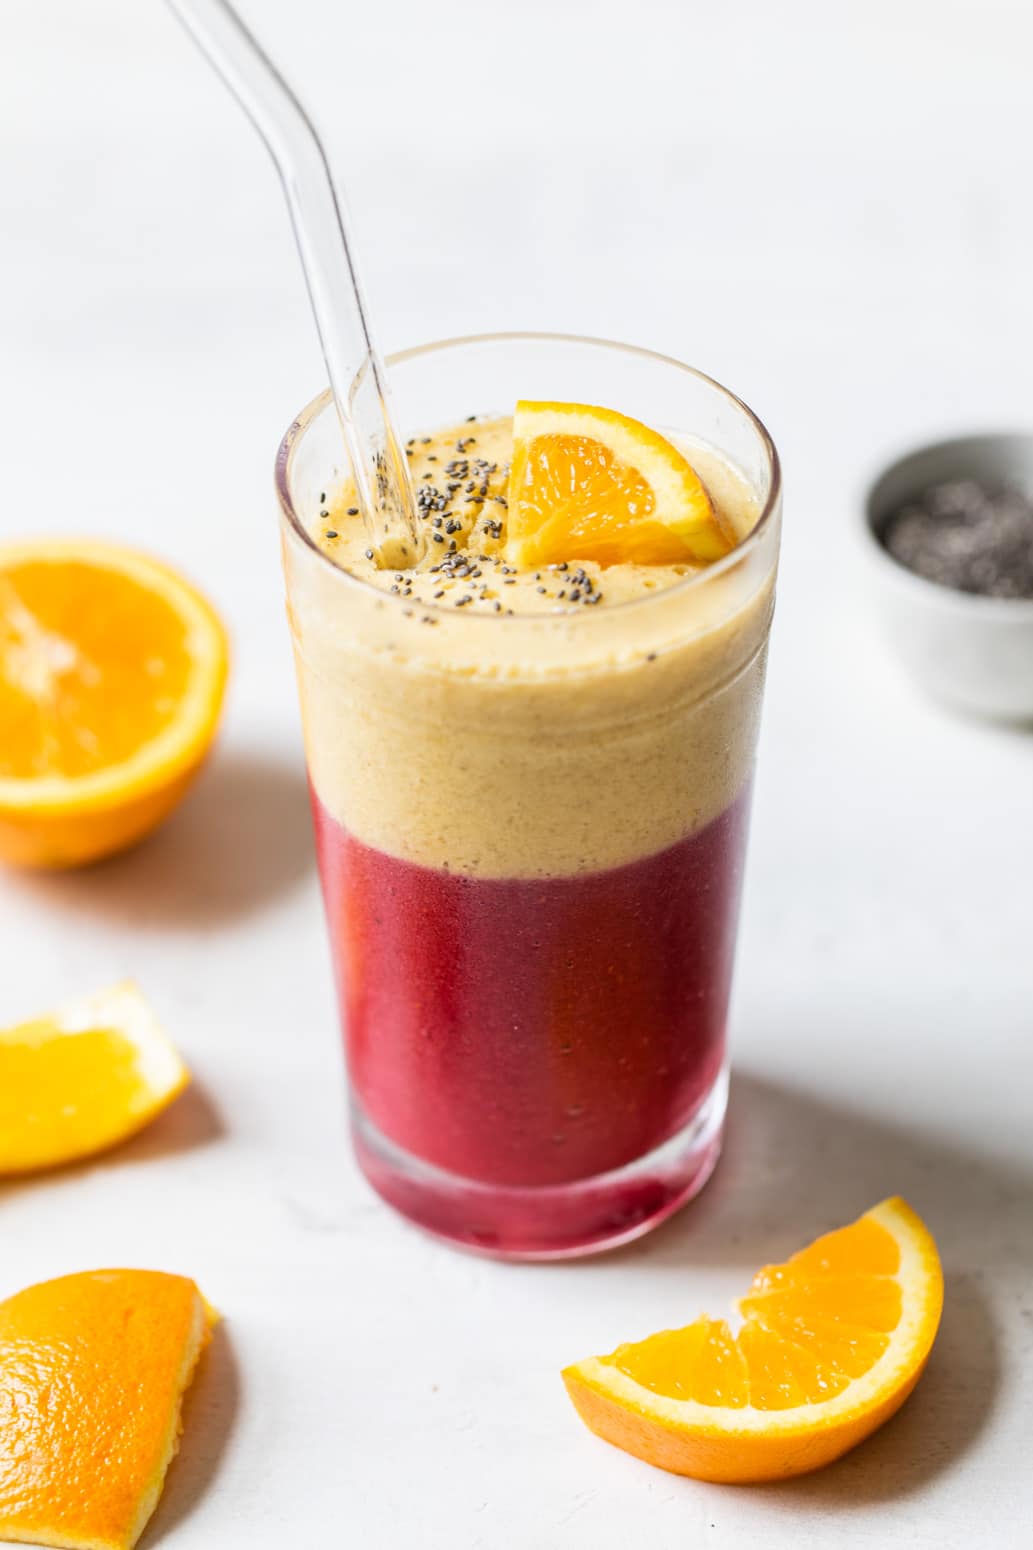 Raspberry and orange juice